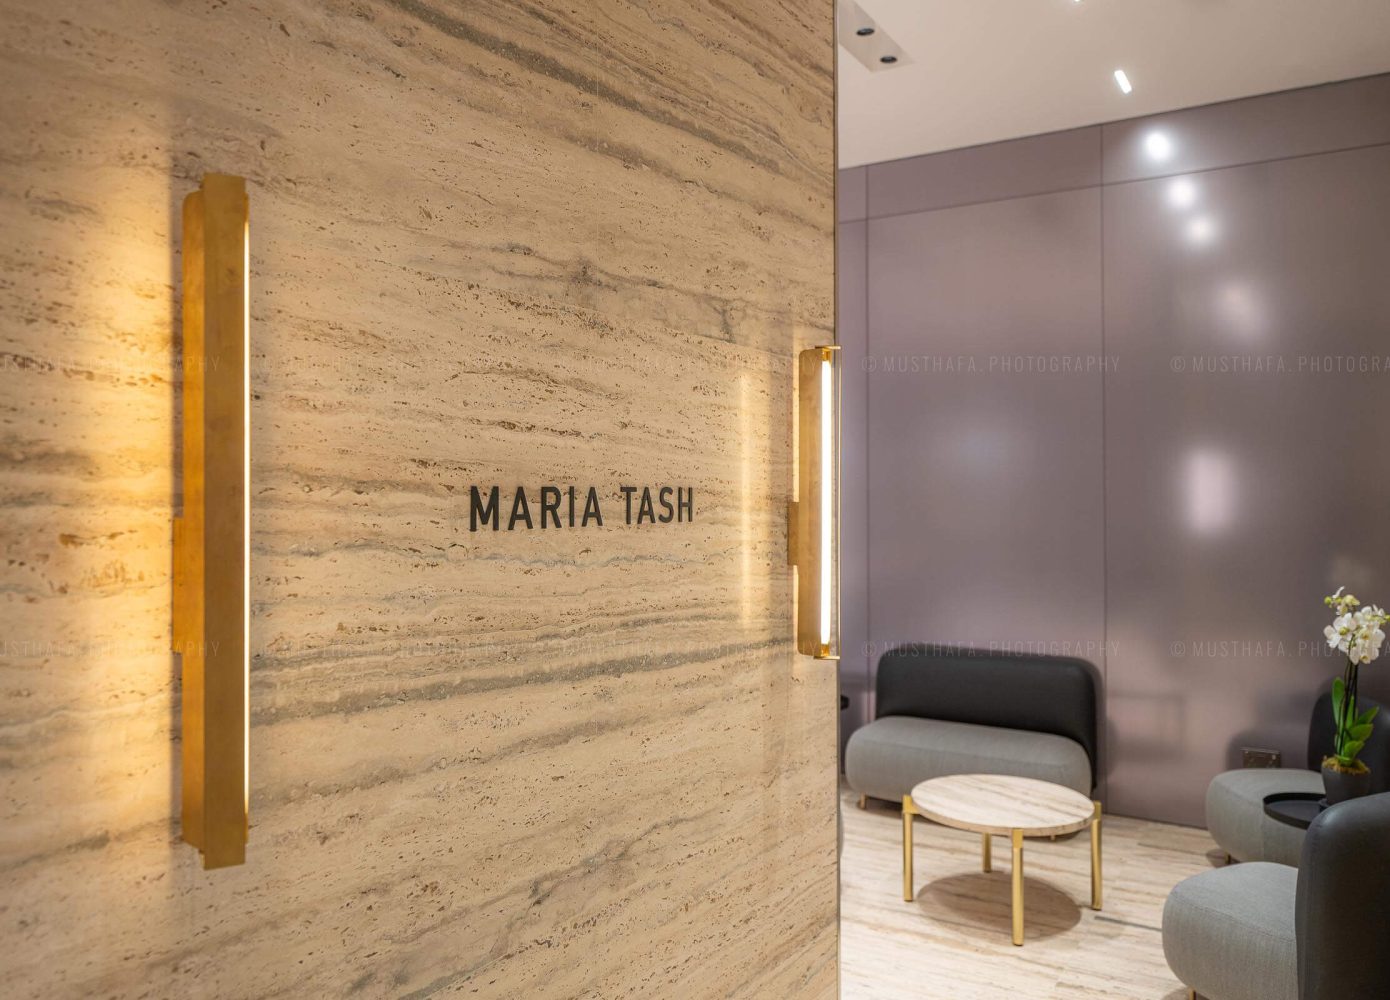 Maria Tash Avenues Mall Kuwait Architectural Interior Photographer in Dubai Abu Dhabi UAE Riyadh Retail Specialist 04